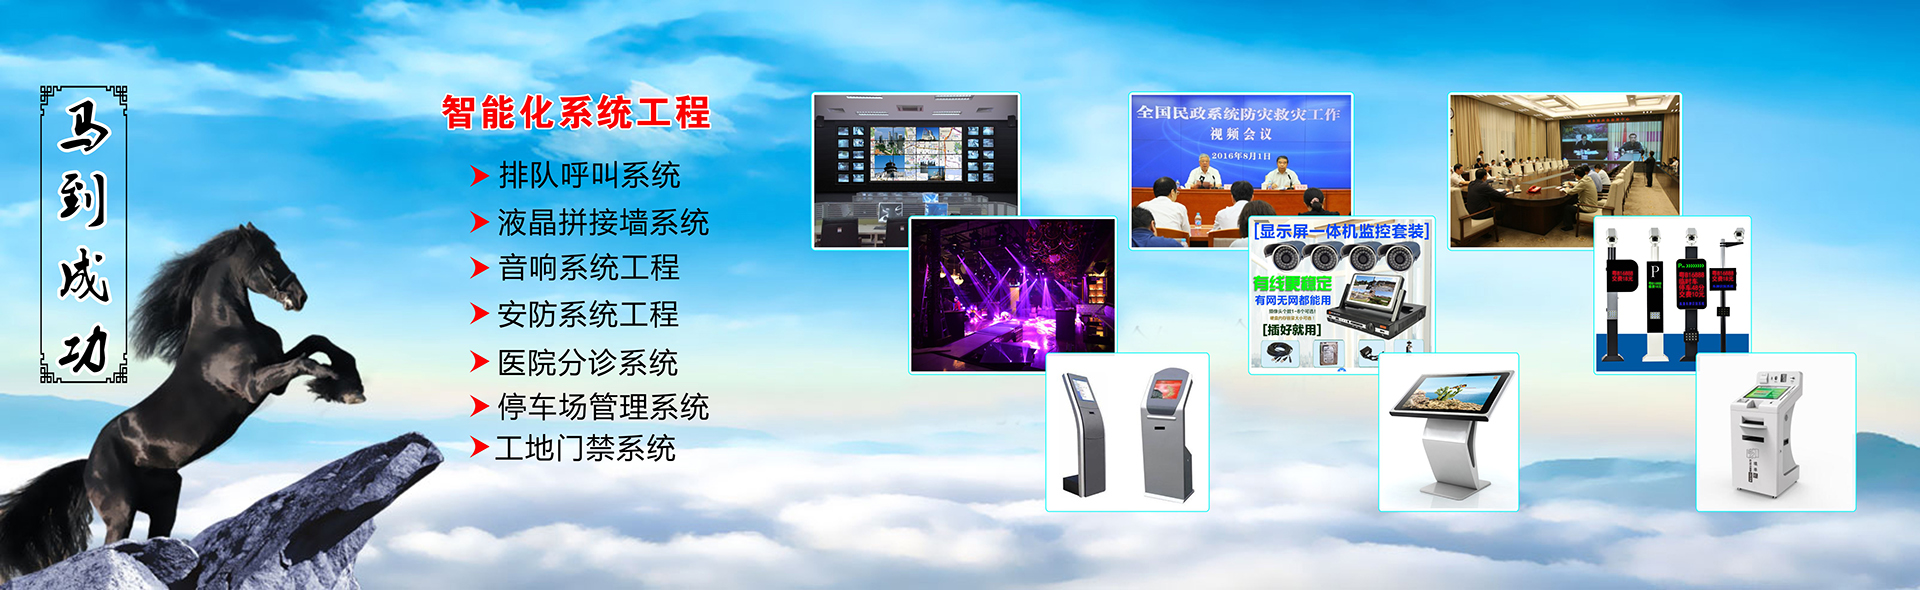 锦州智能化系统工程